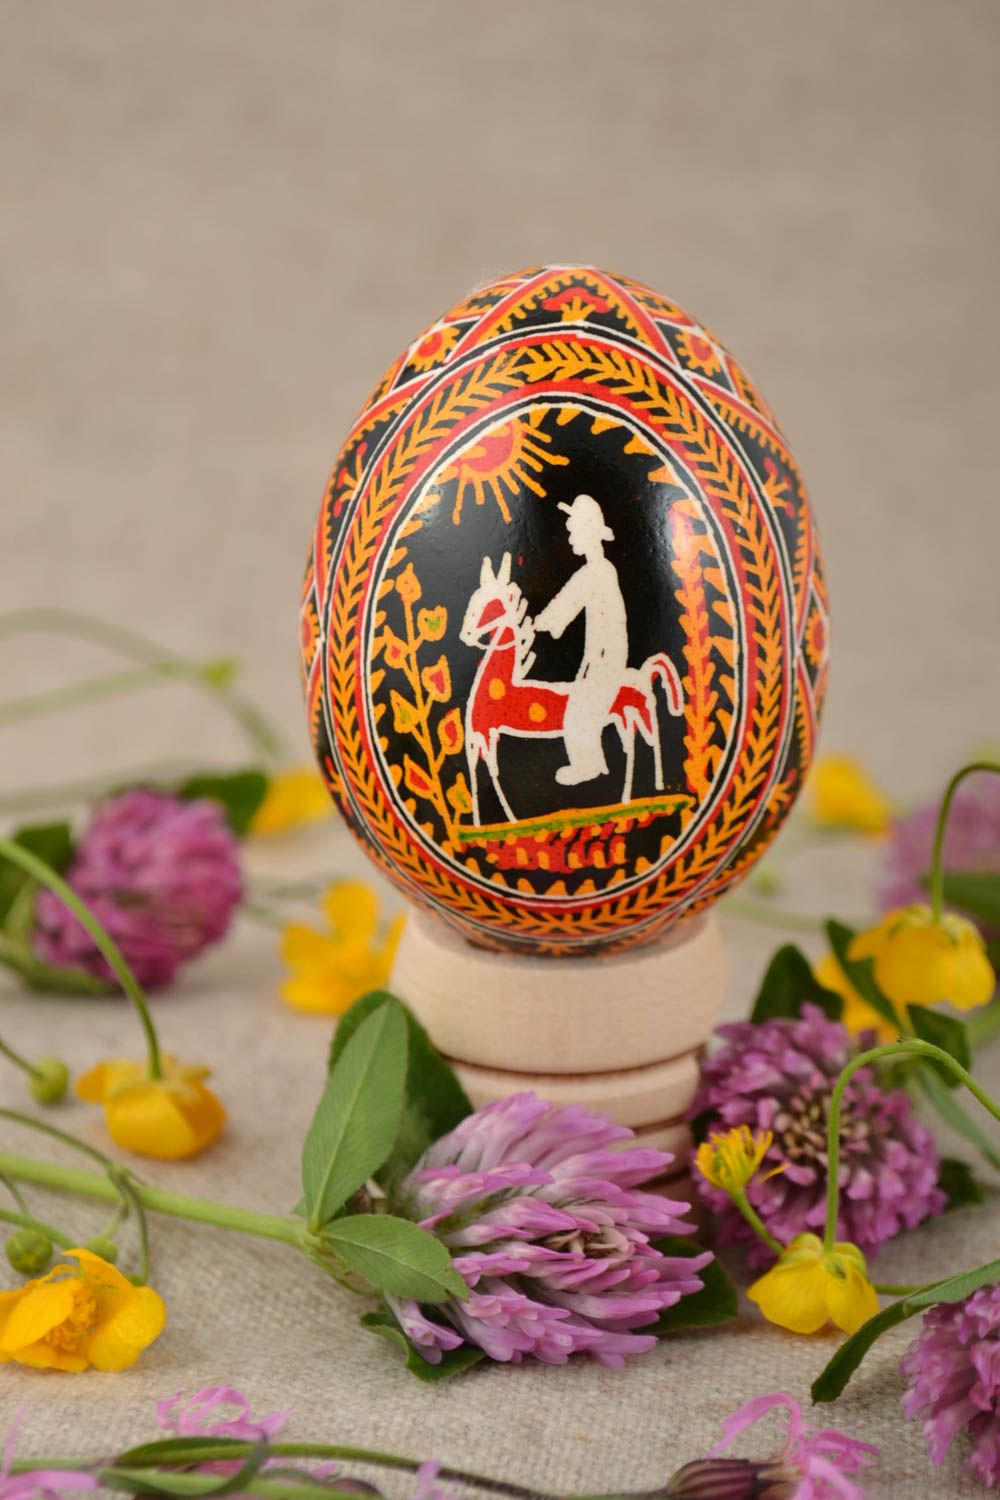 Расписное пасхальное яйцо с орнаментом подарок красивое необычное ручной работы фото 1